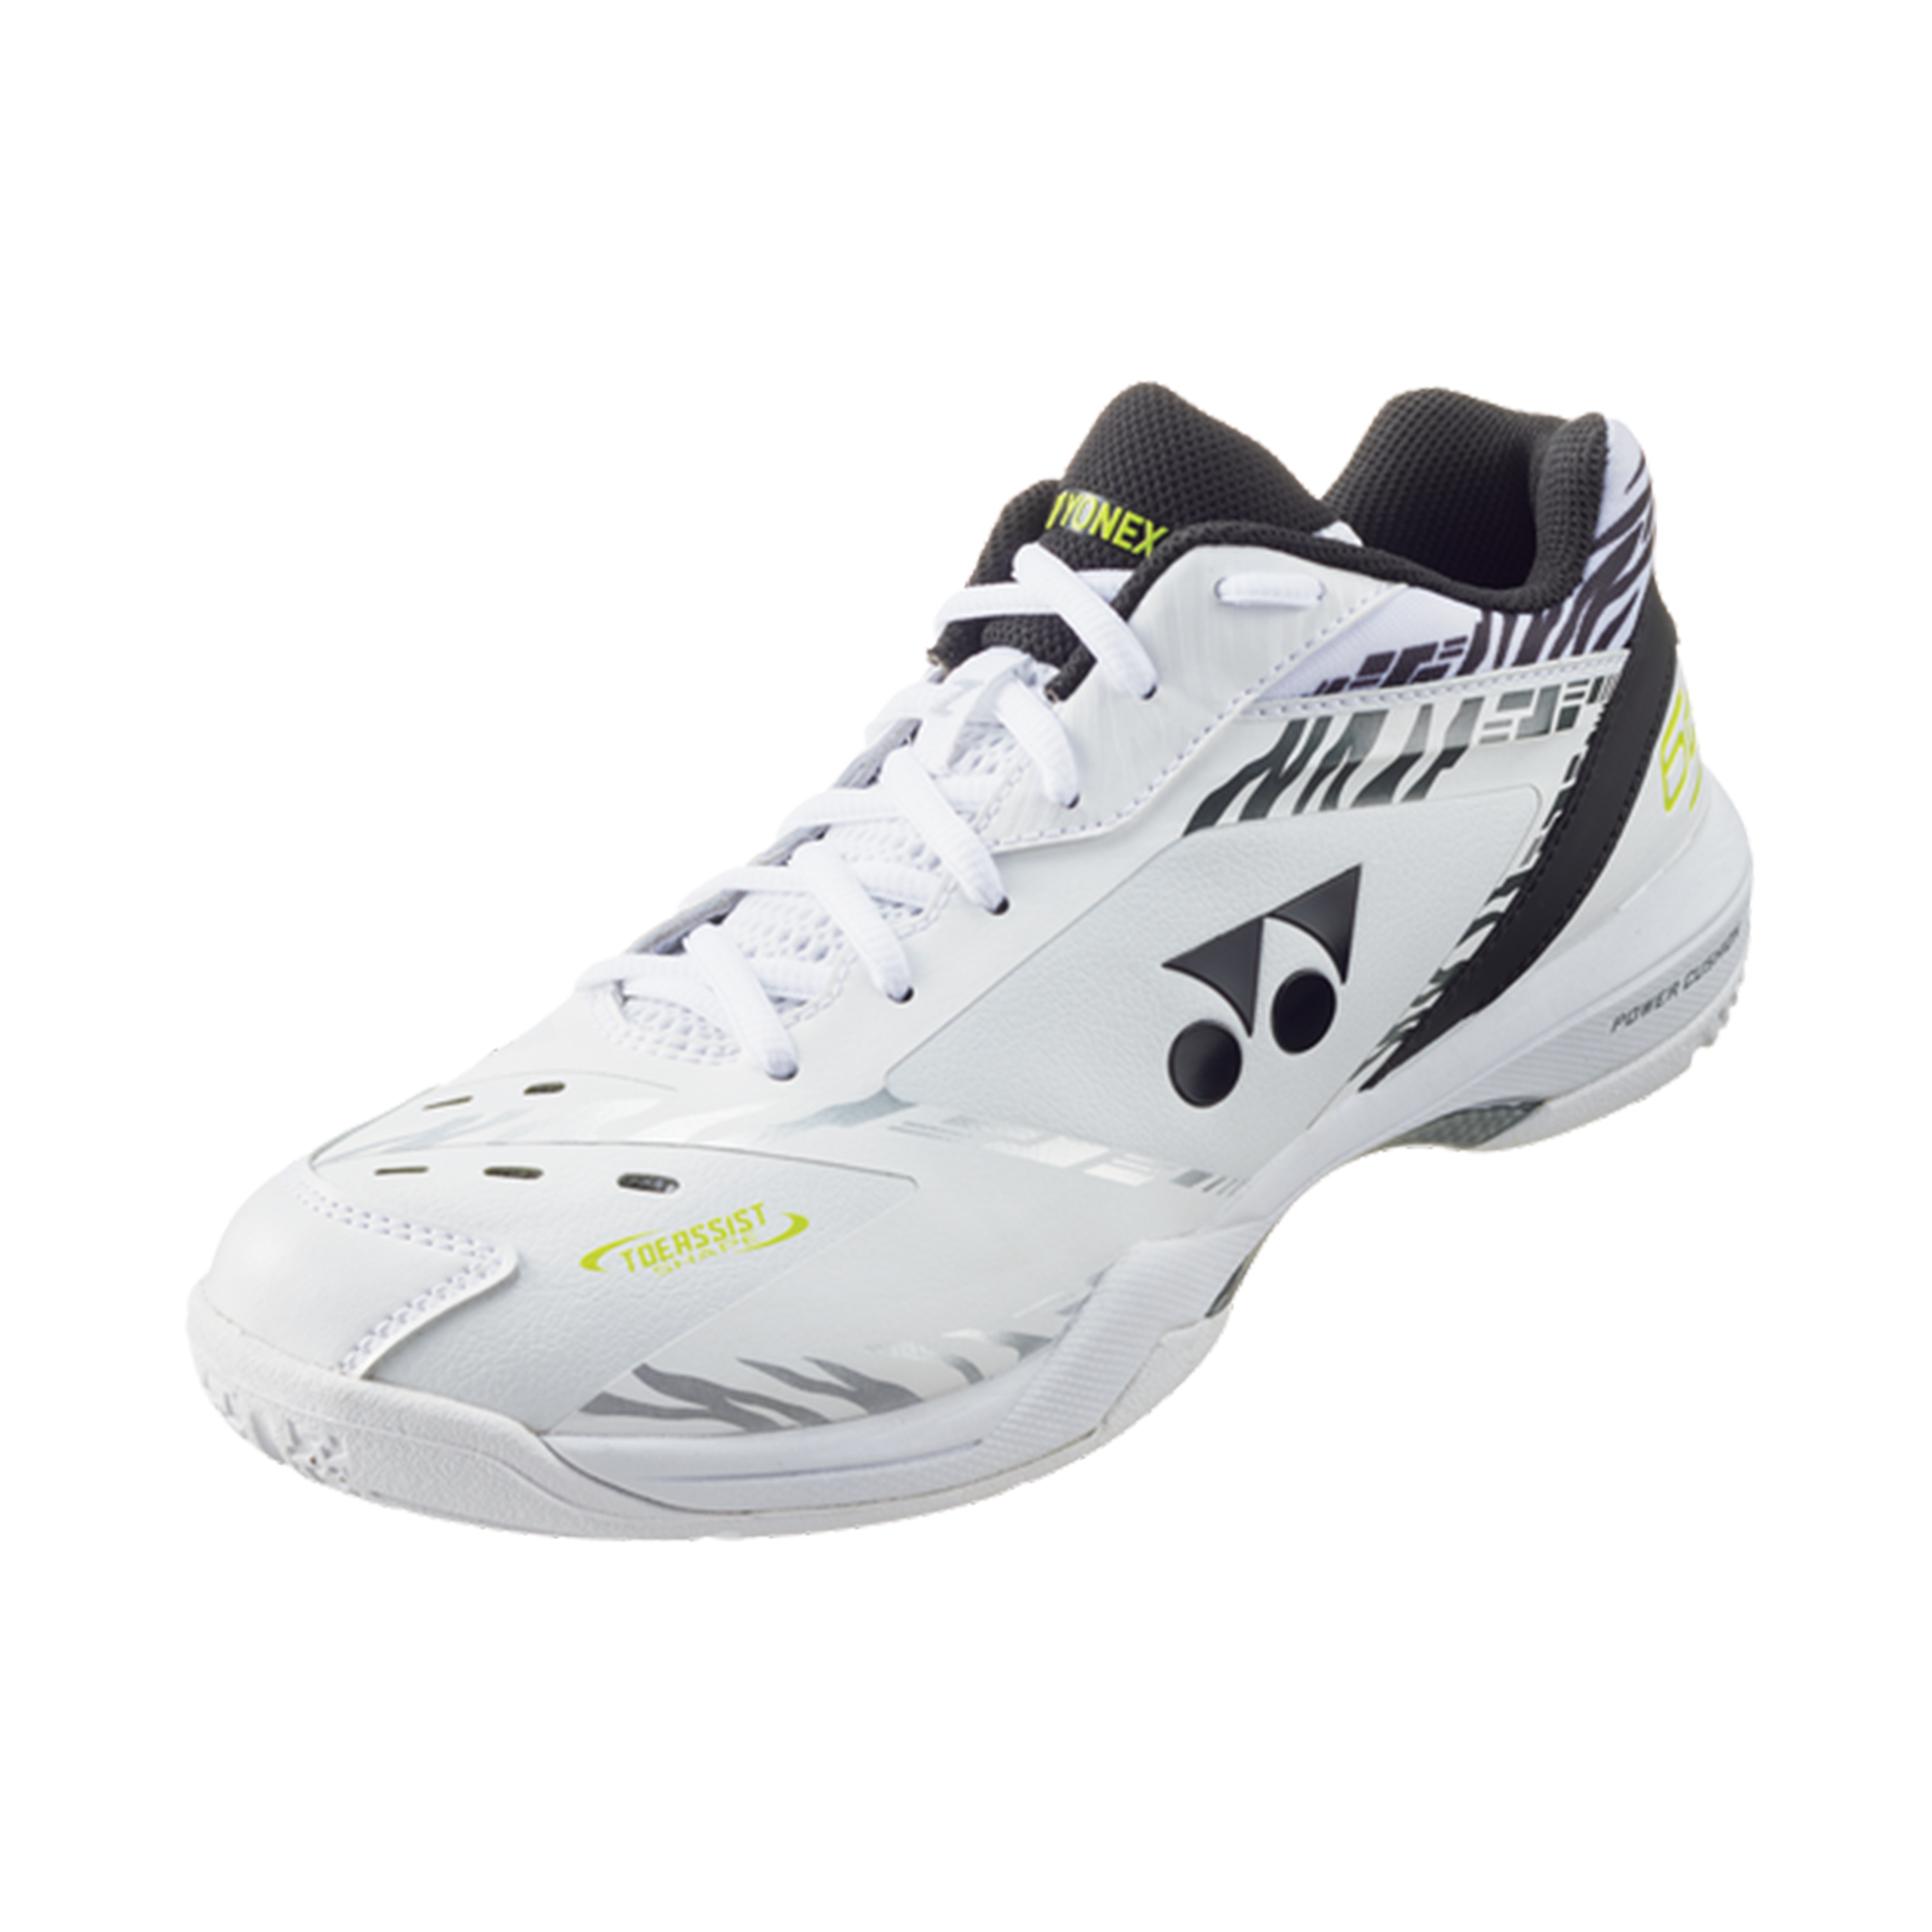 Yonex Power Cushion 65Z 3 Badminton Shoes White Tiger MEN'S